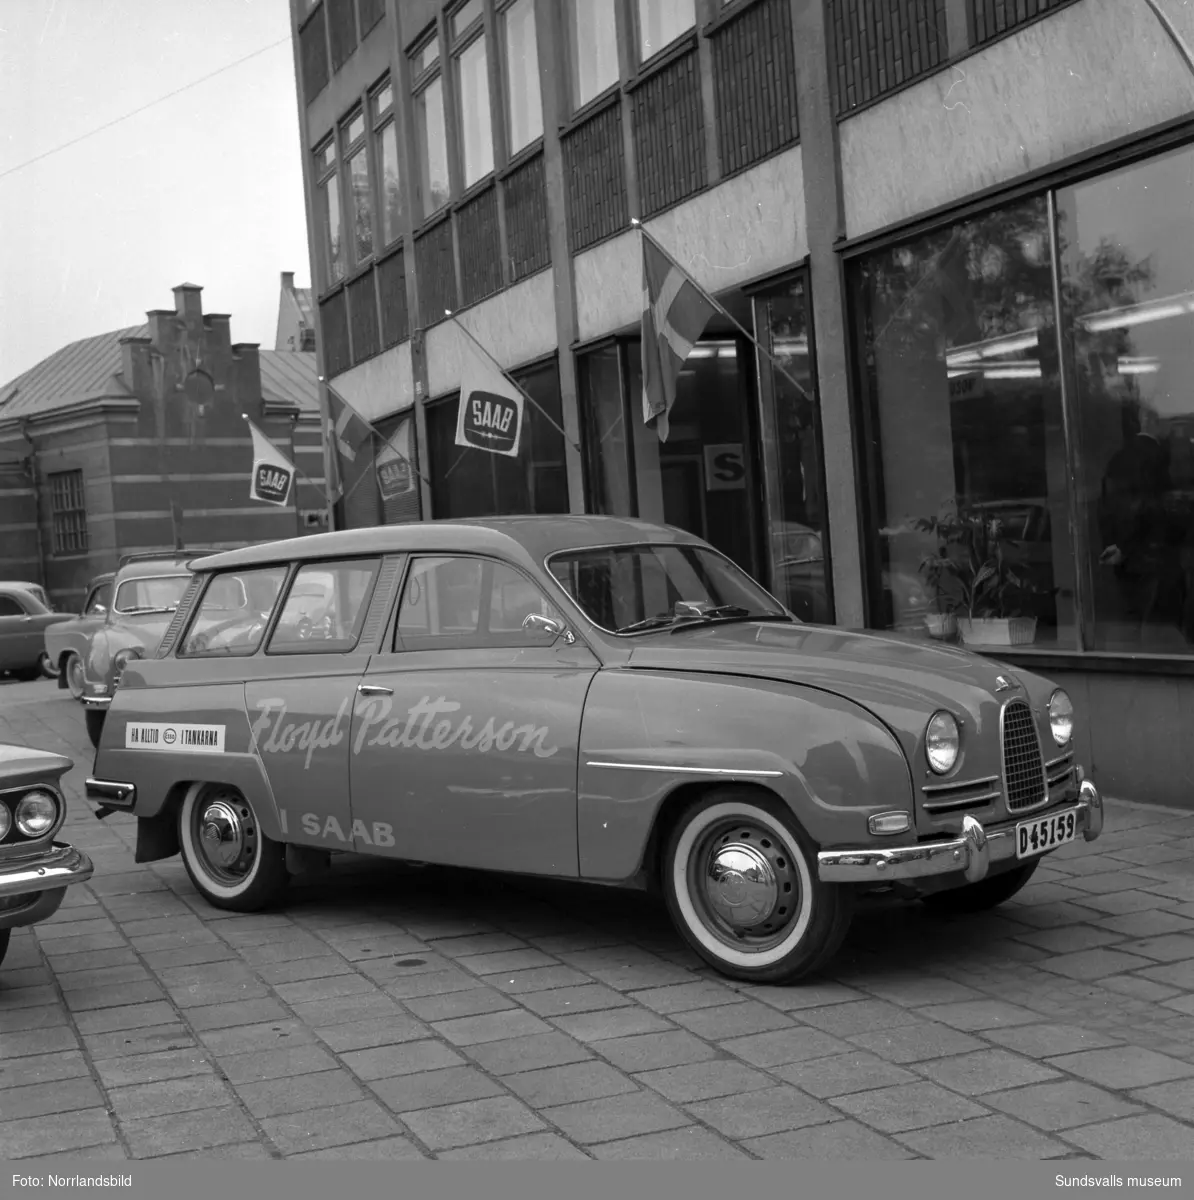 Saab ANA visar upp bilar med Floyd Pattersson-reklam utanför bilhallen på Köpmangatan 1.